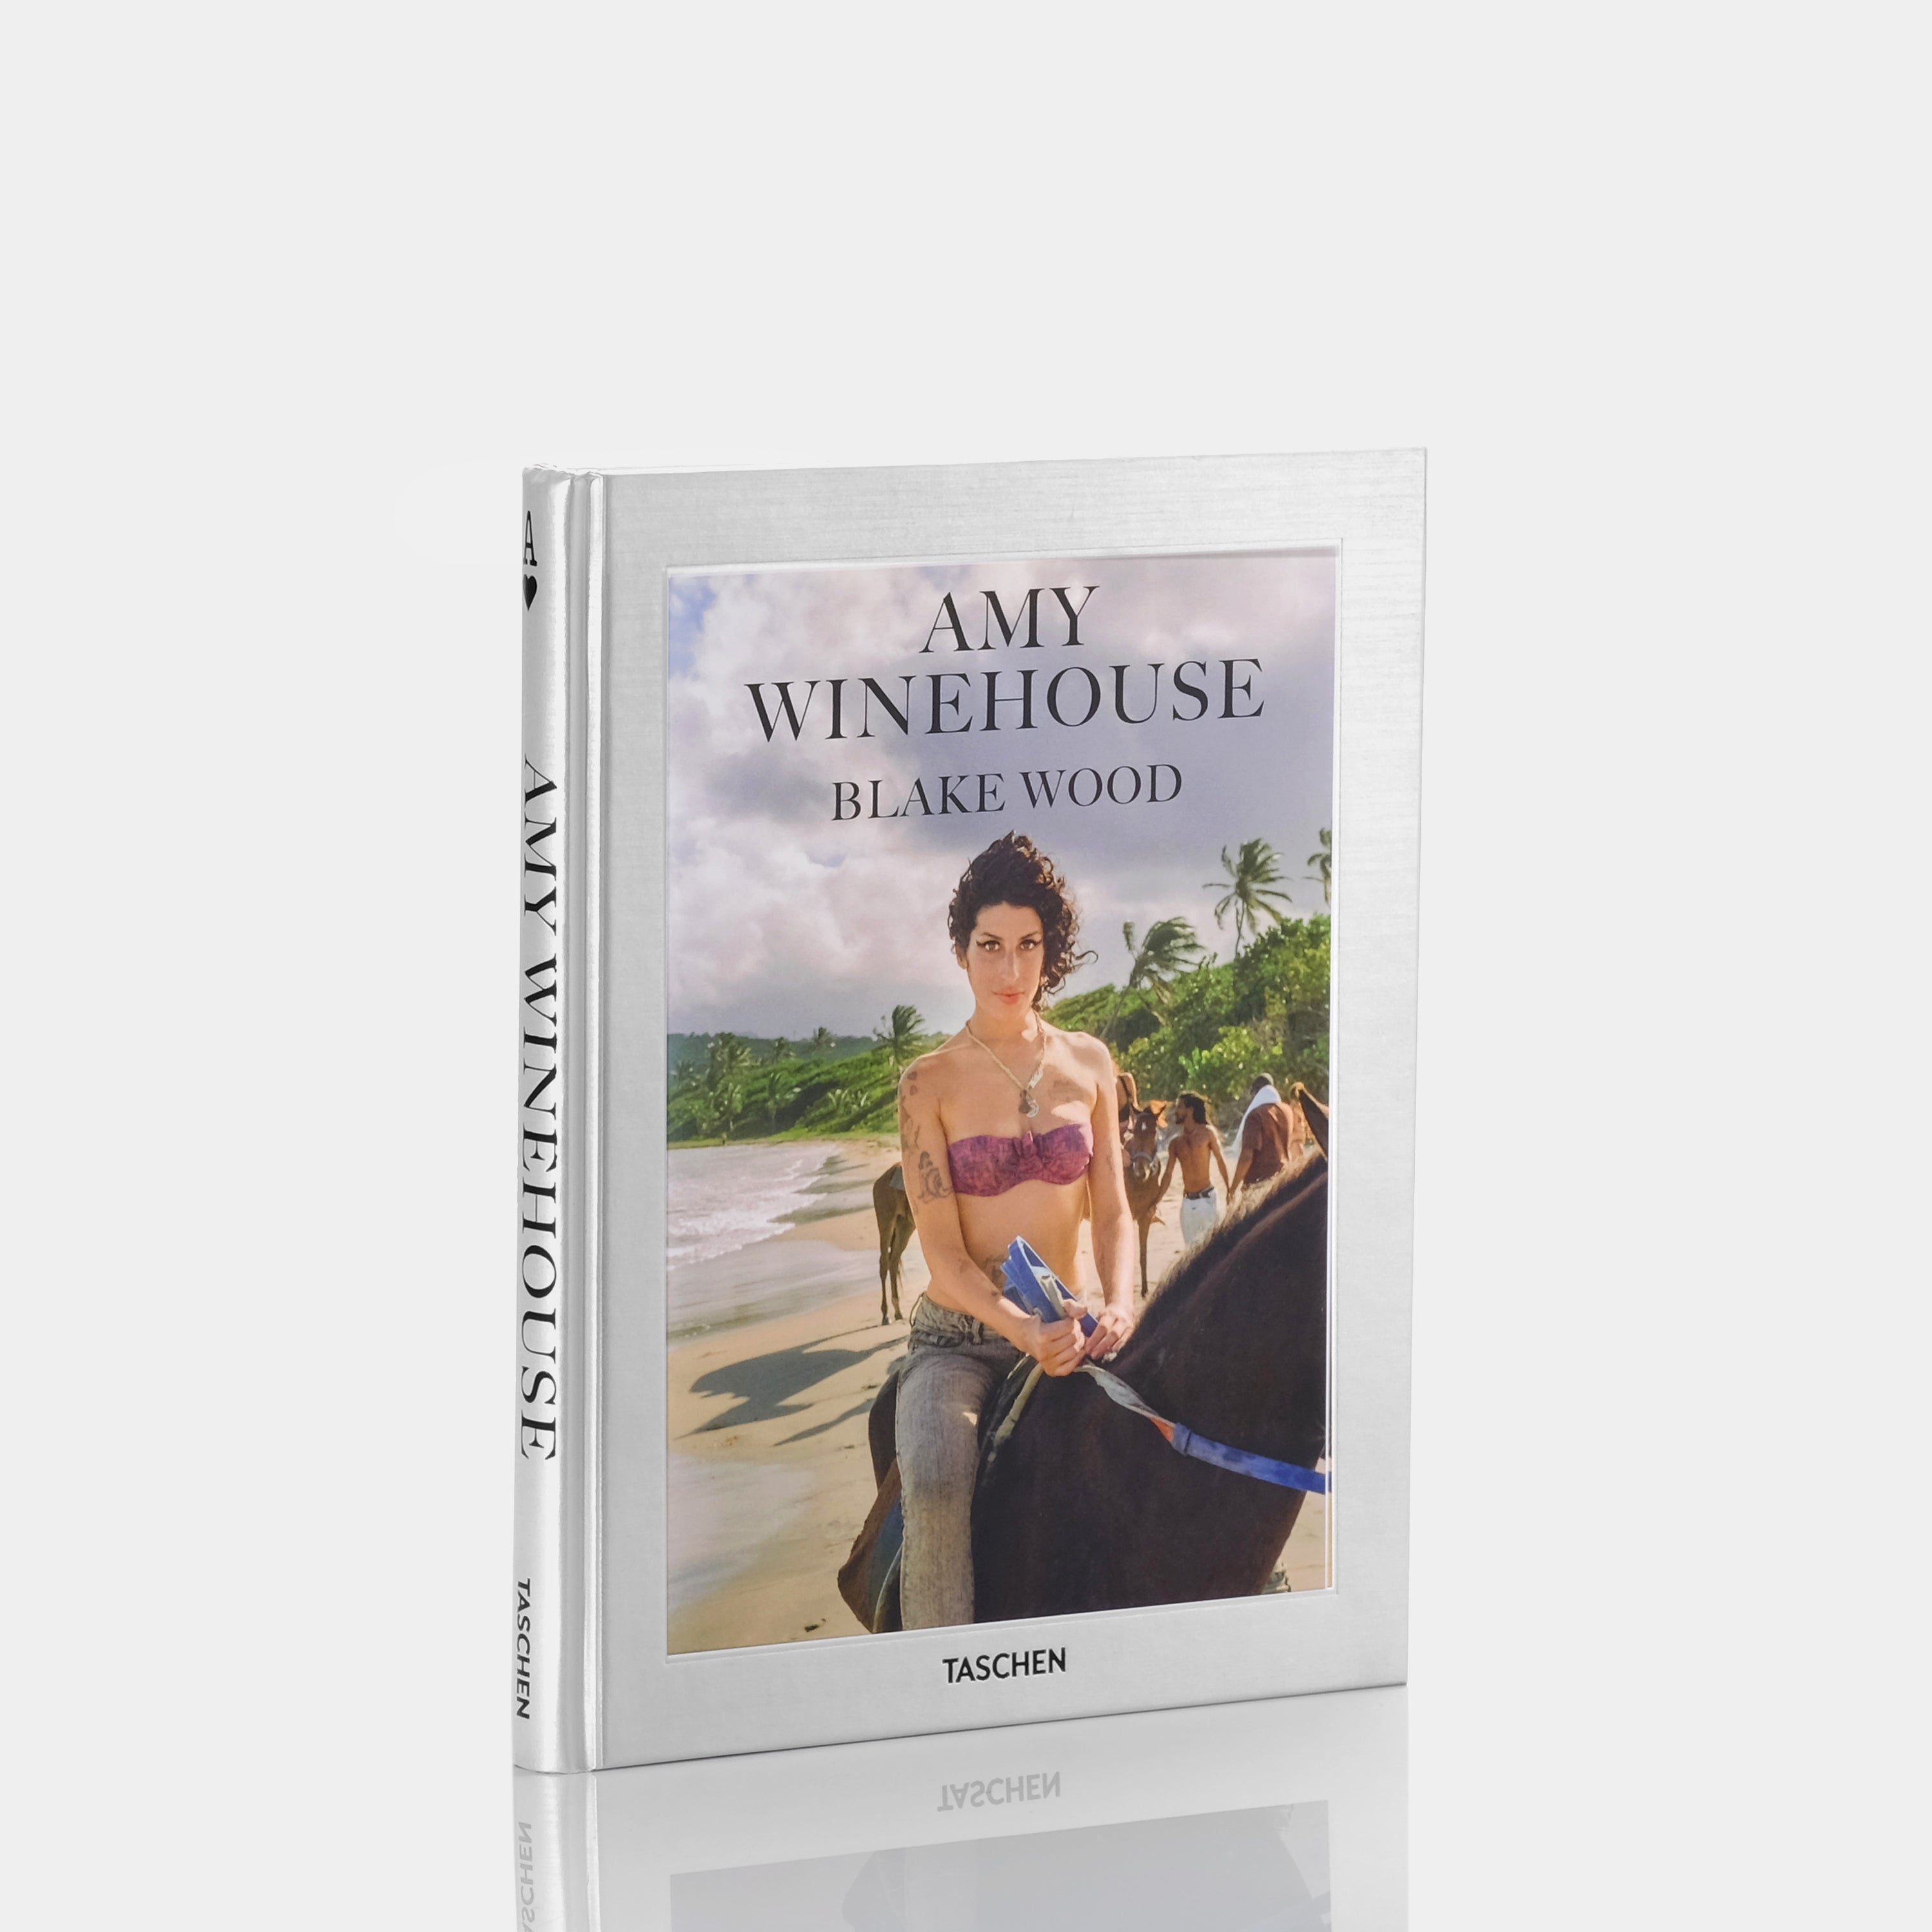 Amy Winehouse by Blake Wood Taschen Book